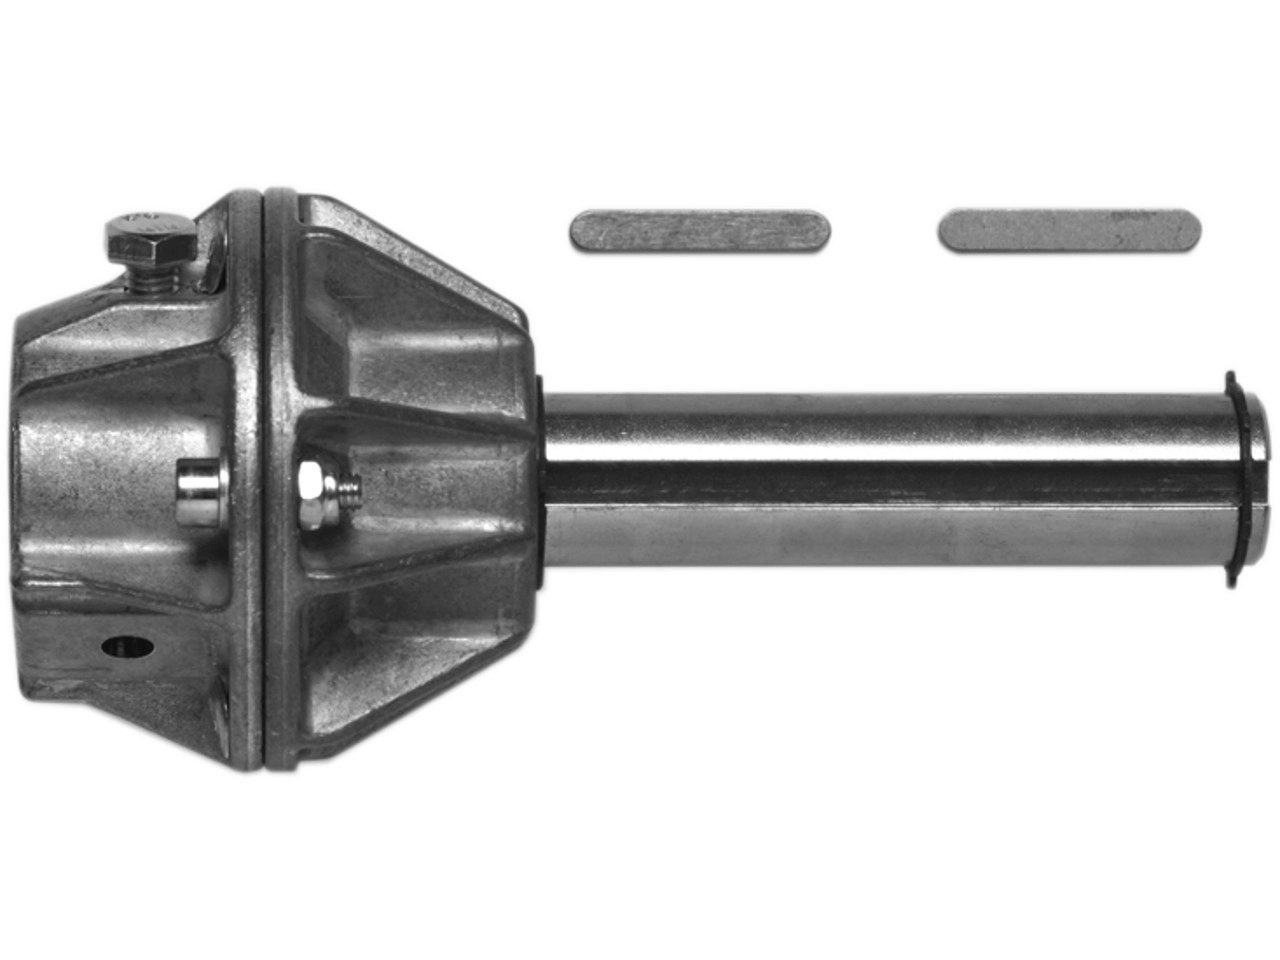 Wellenadapter Steckwelle 25.4mm mit Adapter für Federwelle 35.00mm mit Nut